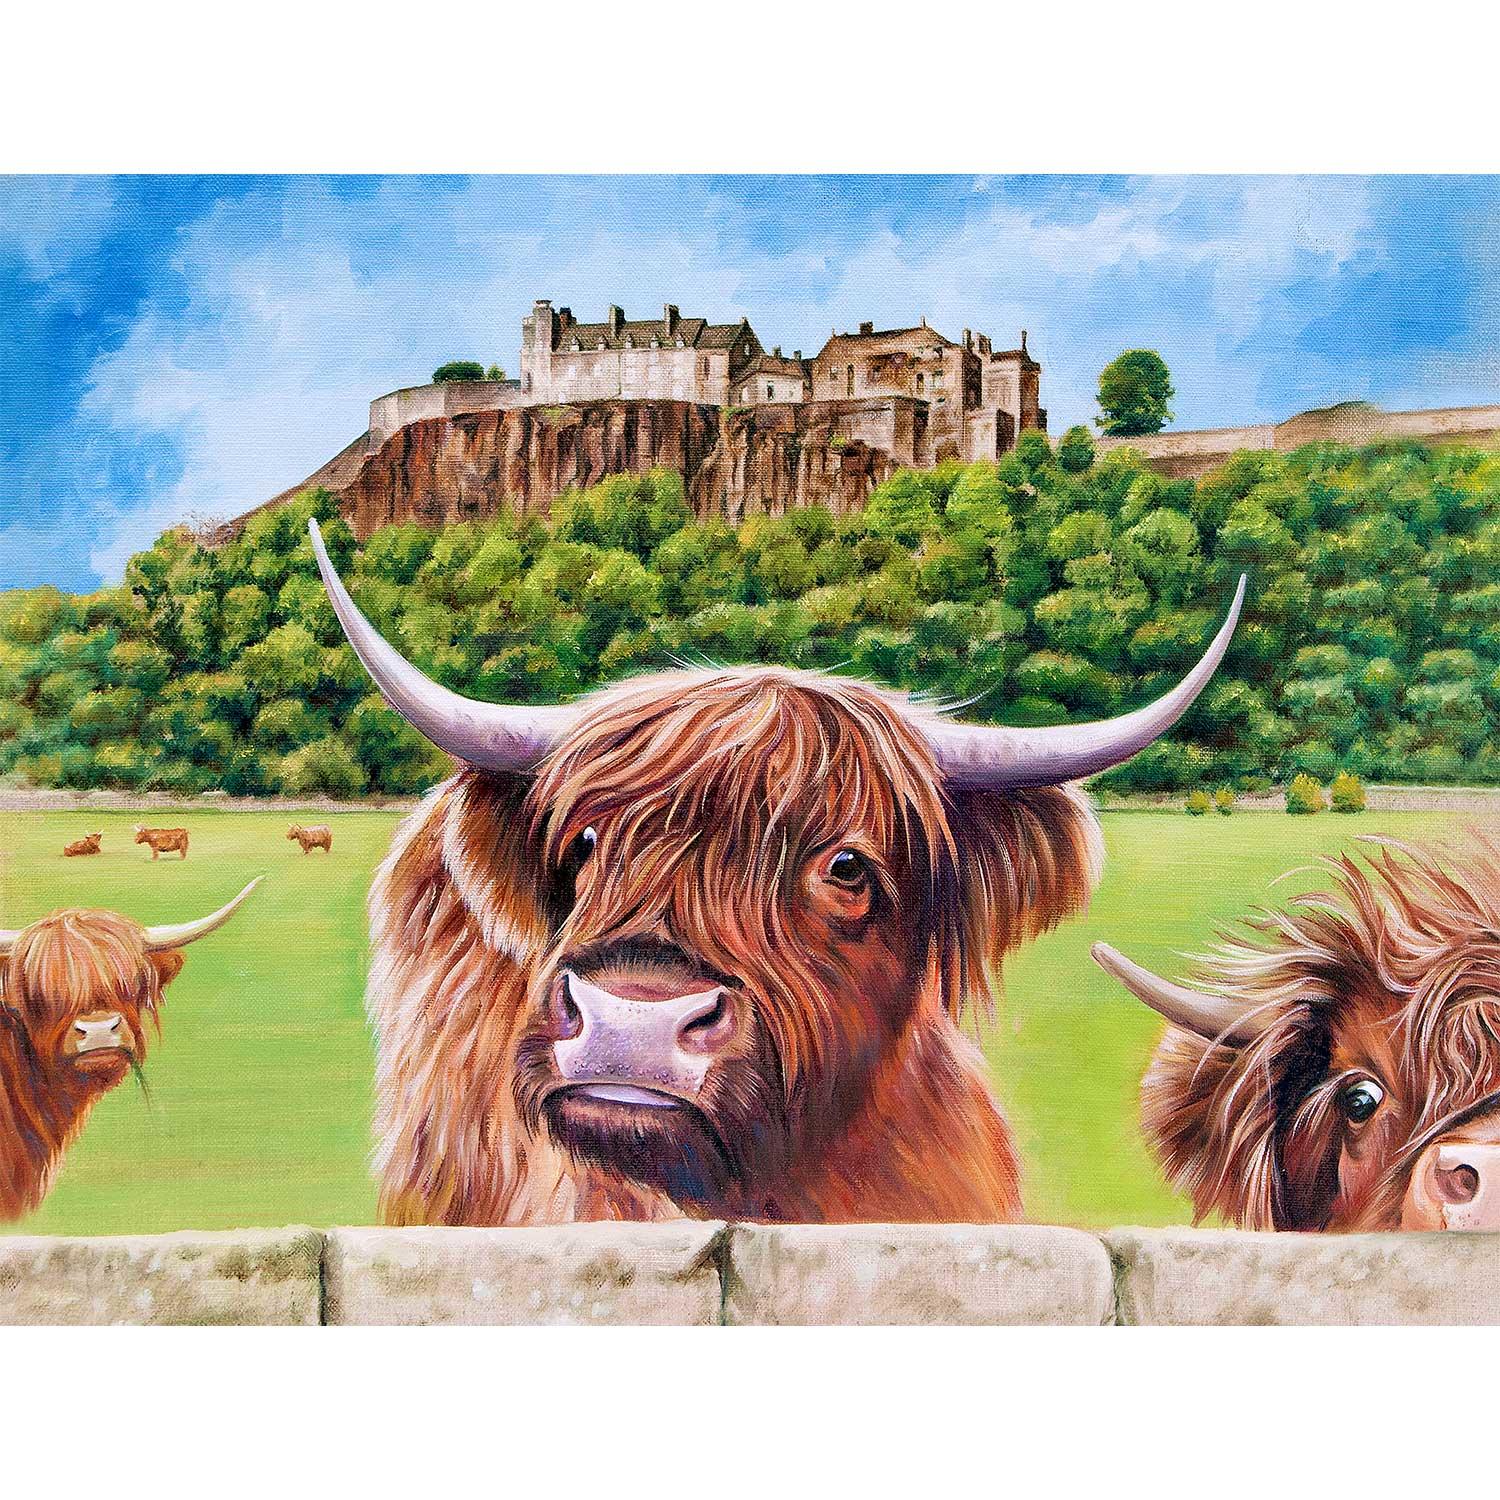 Stirling Castle by Scott McGregor